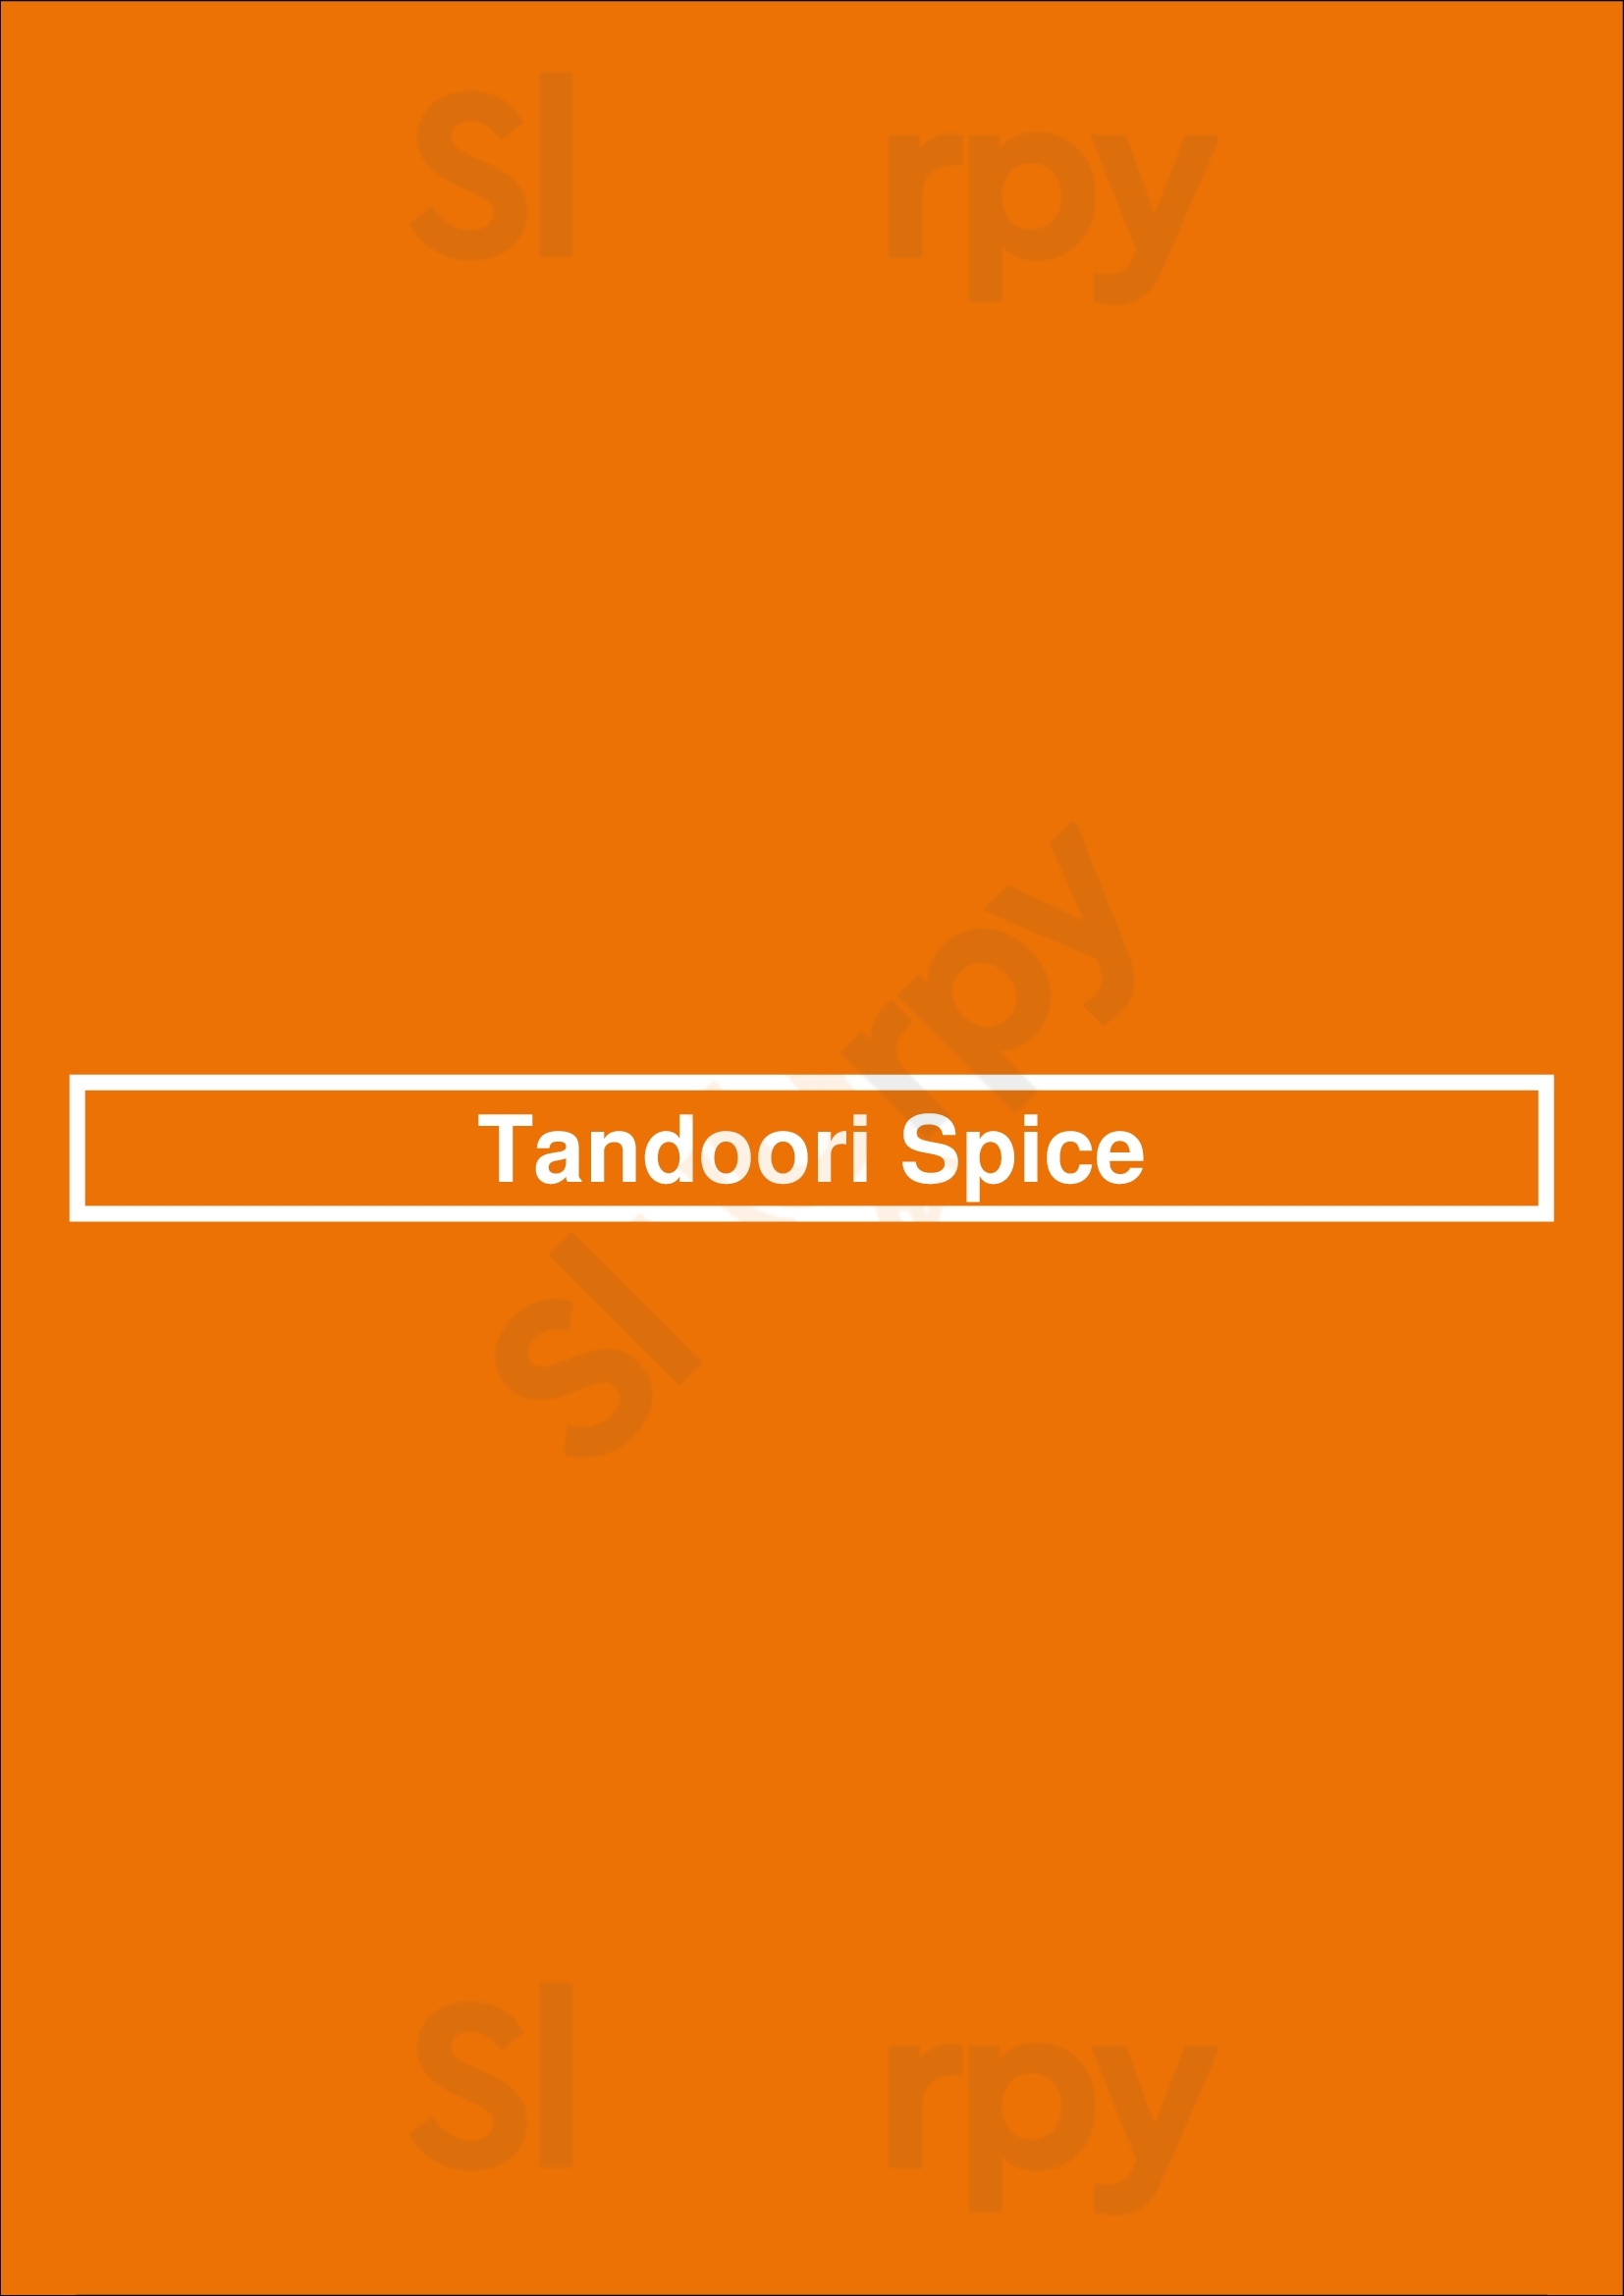 Tandoori Spice Stirling Menu - 1